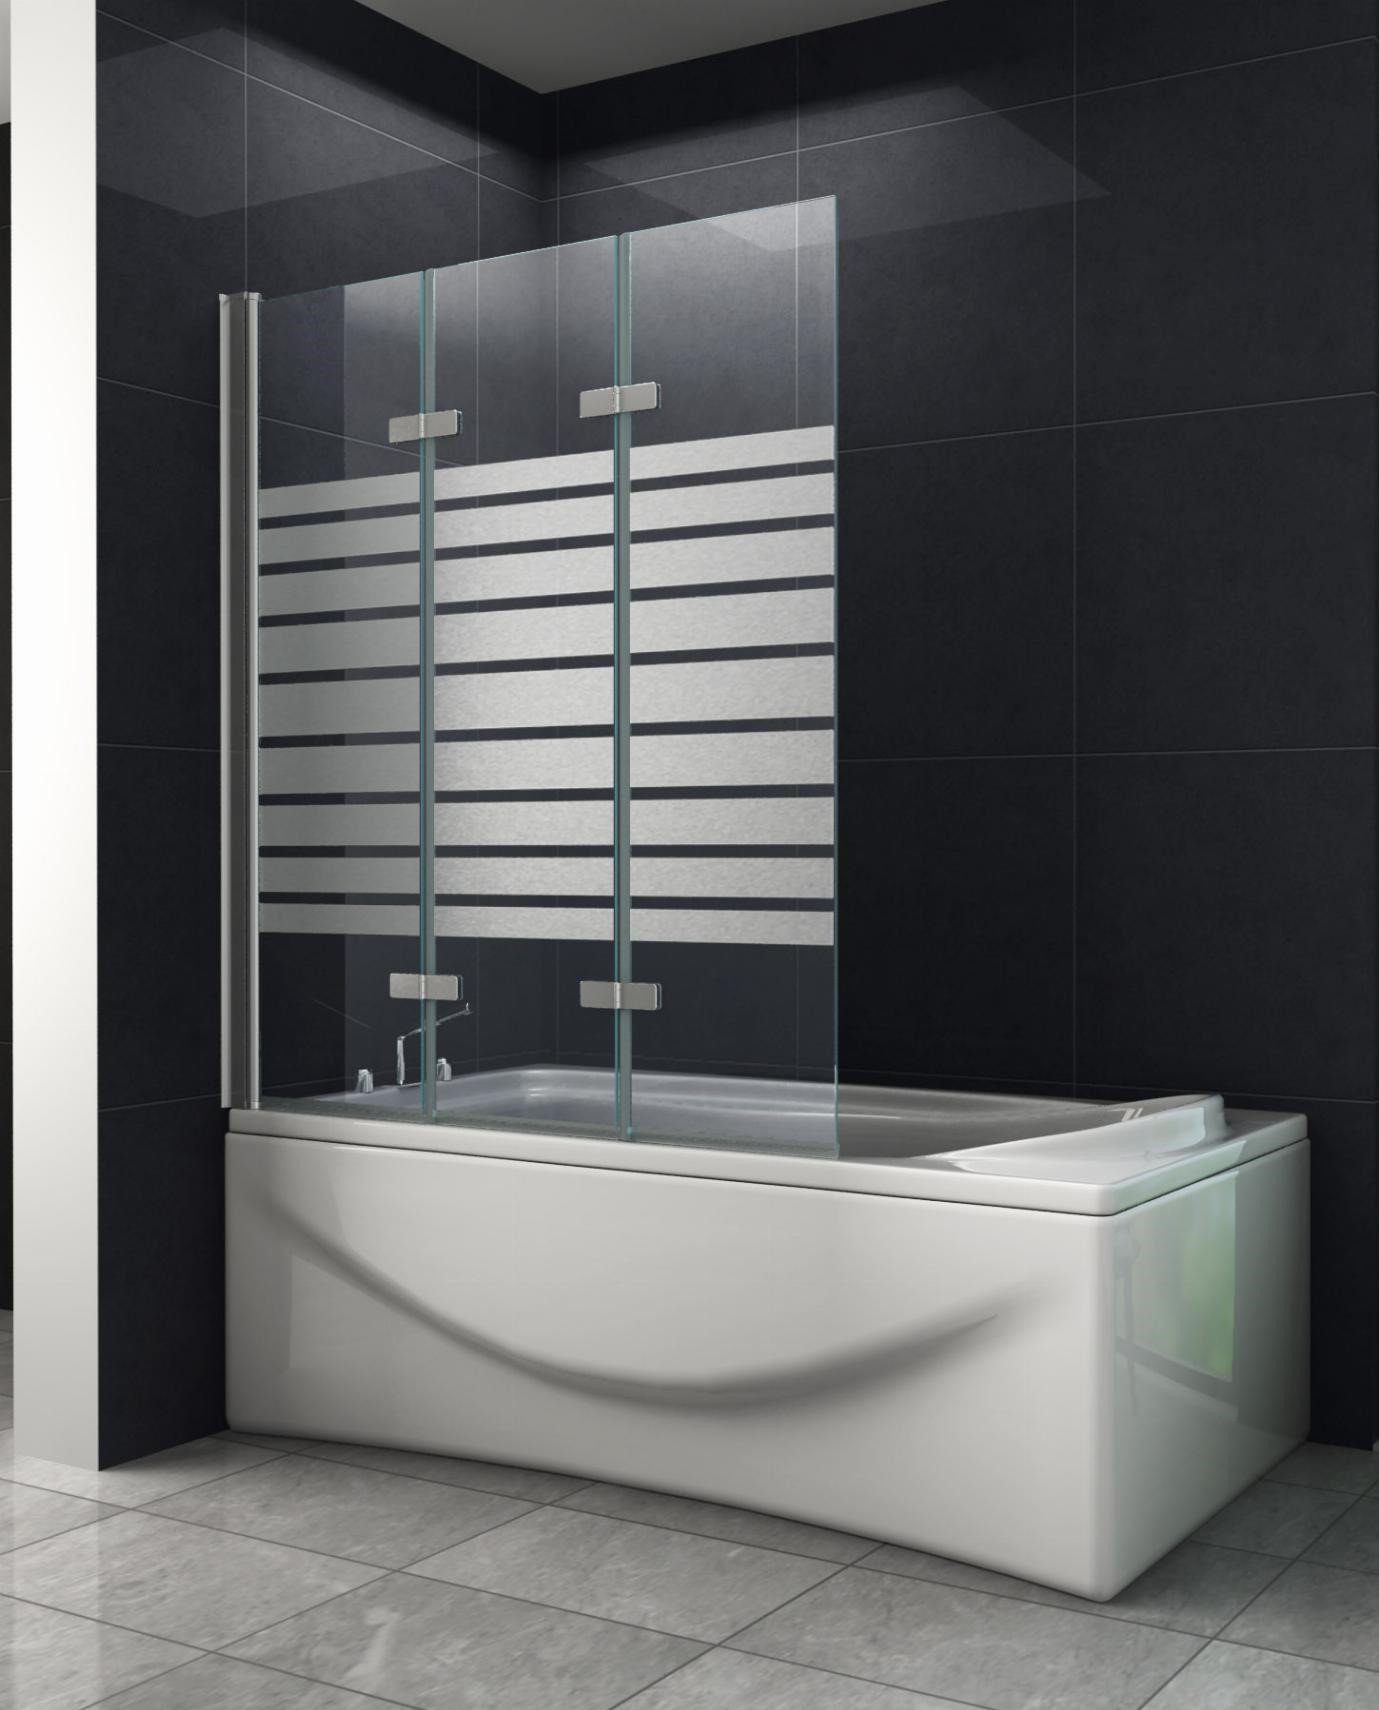 Home Systeme Badewannenaufsatz Duschwand Duschtrennwand Duschkabine Dusche Falttür Klarglas Satiniert